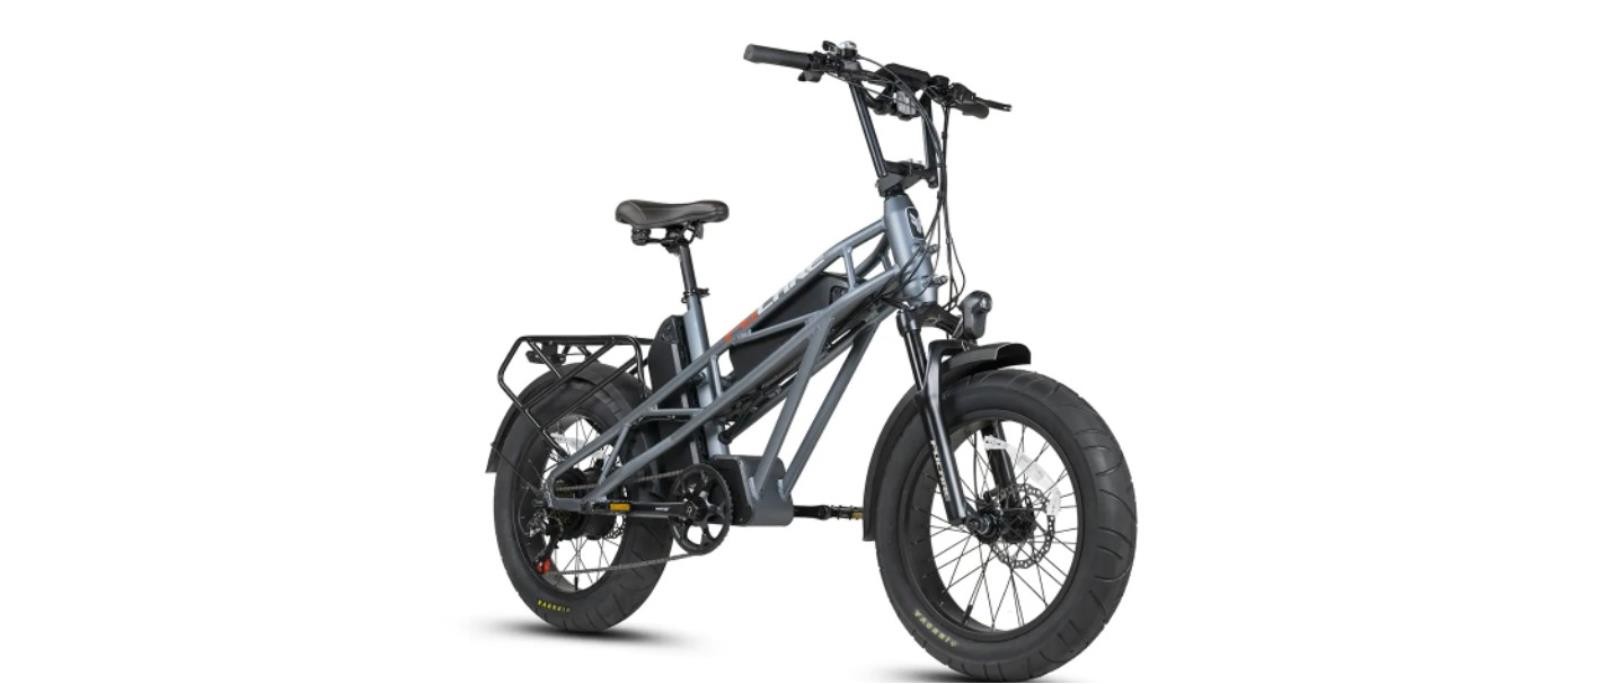 Nowy elektryczny rower Gemini X, elektryczny rower Gemini X, rower Gemini X,